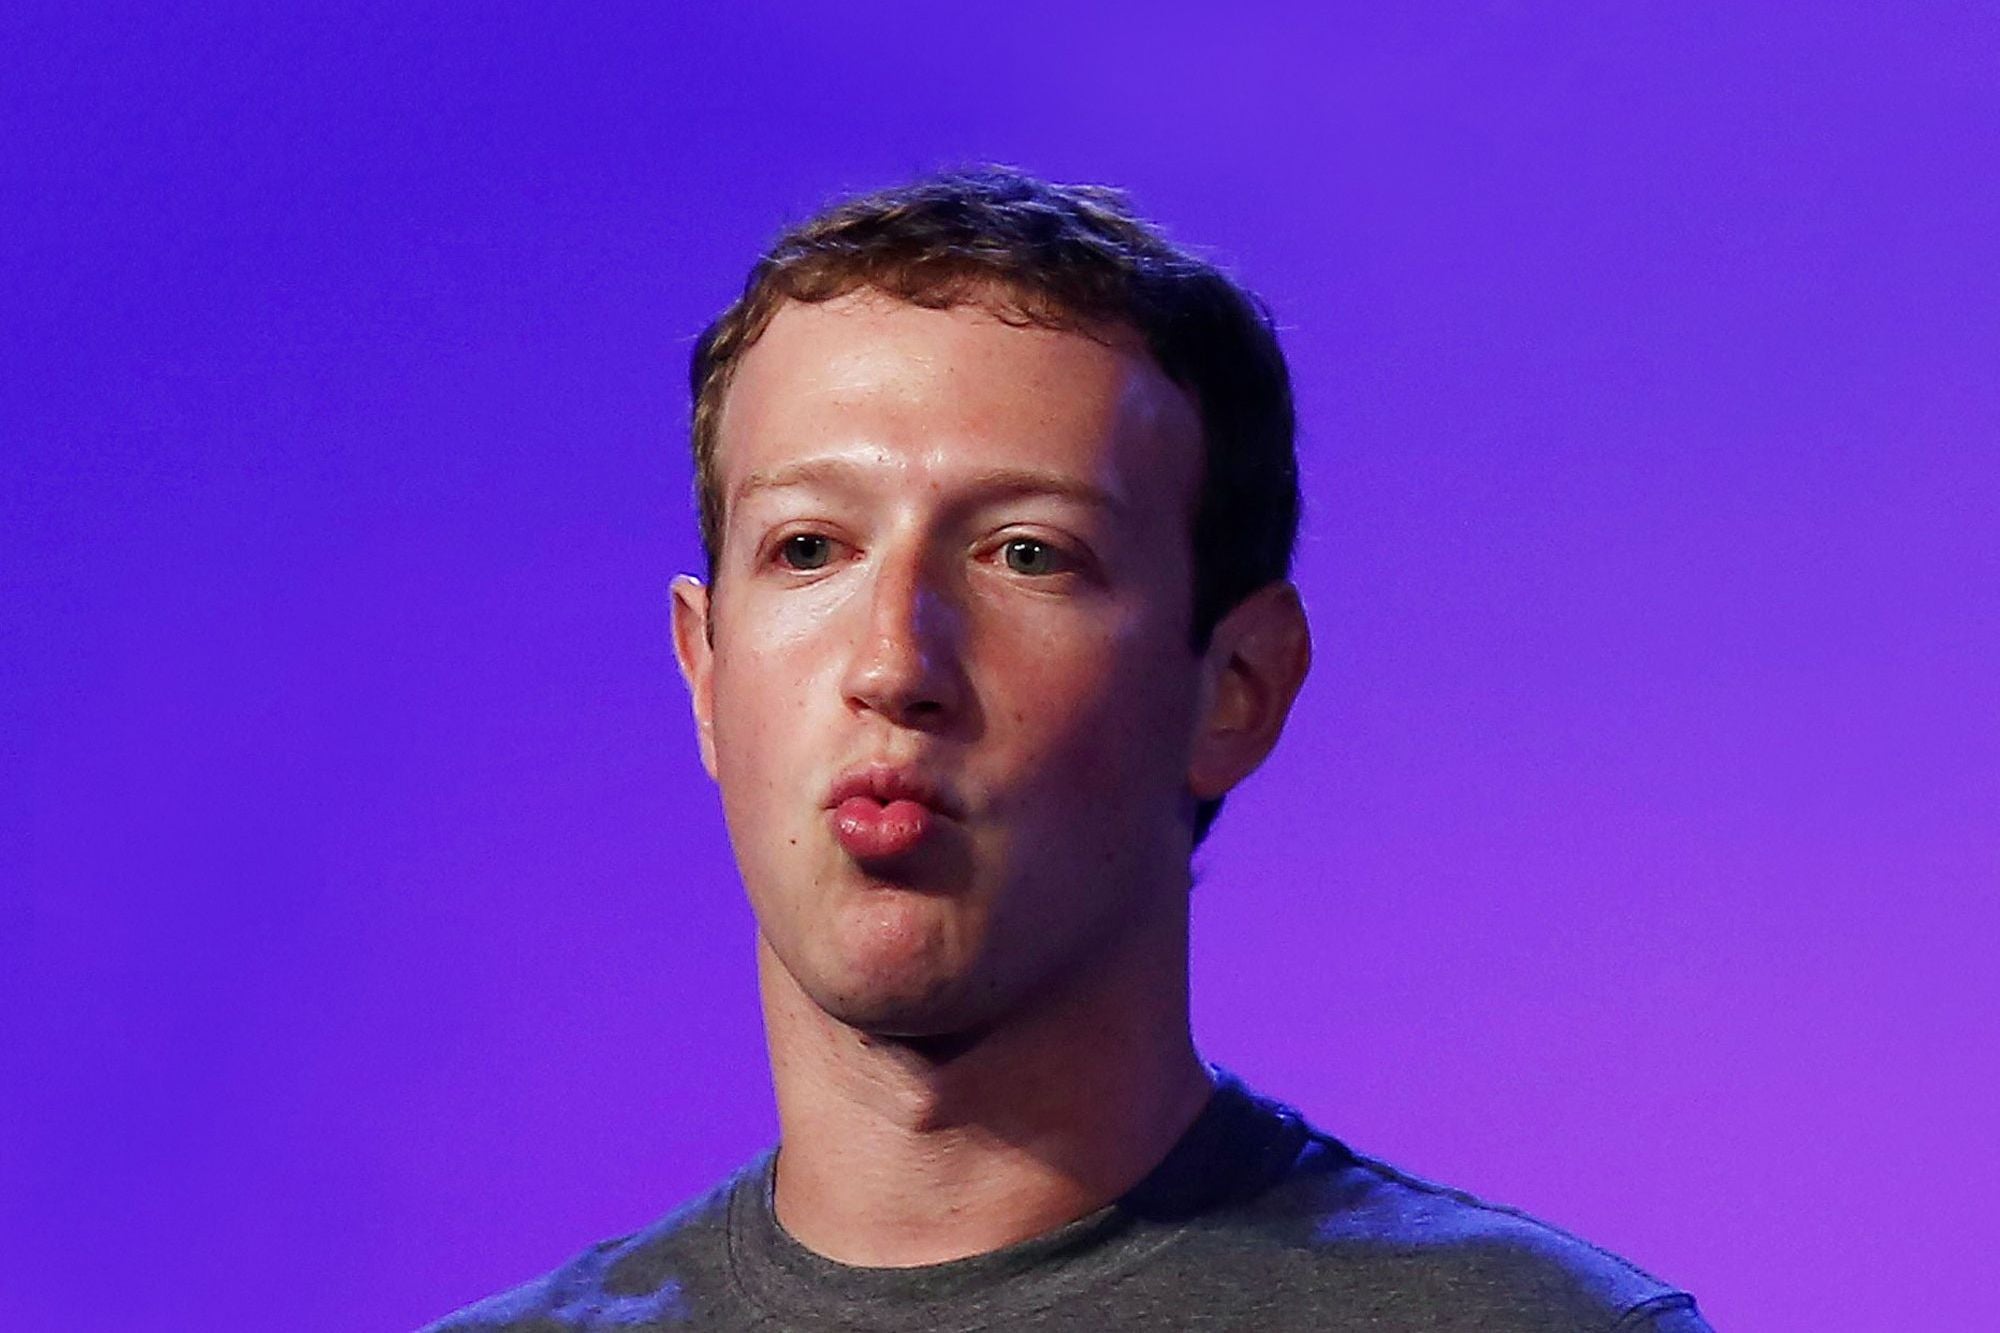 Facebook CEO Mark Zuckerberg is now worth $100 billion